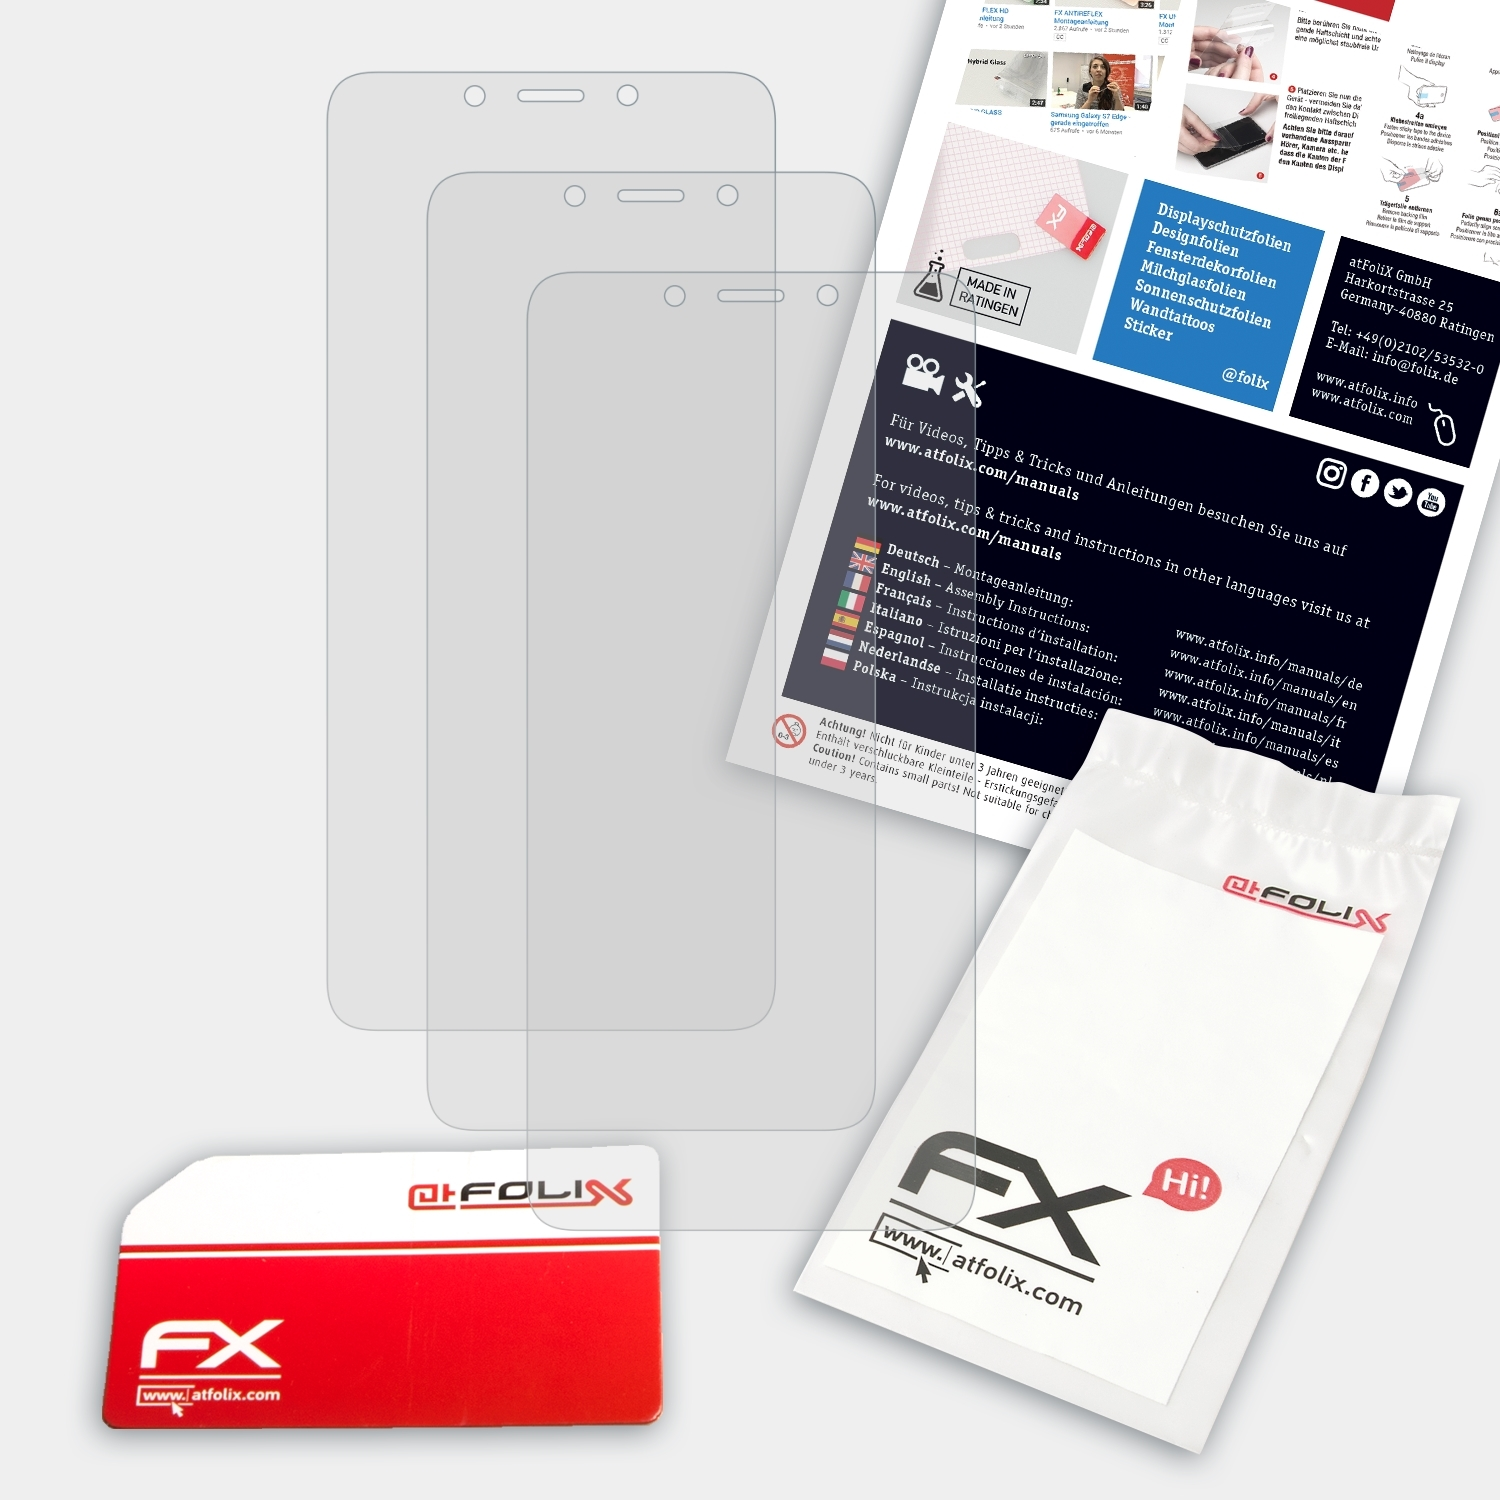 6) 3x ATFOLIX Redmi FX-Antireflex Xiaomi Displayschutz(für